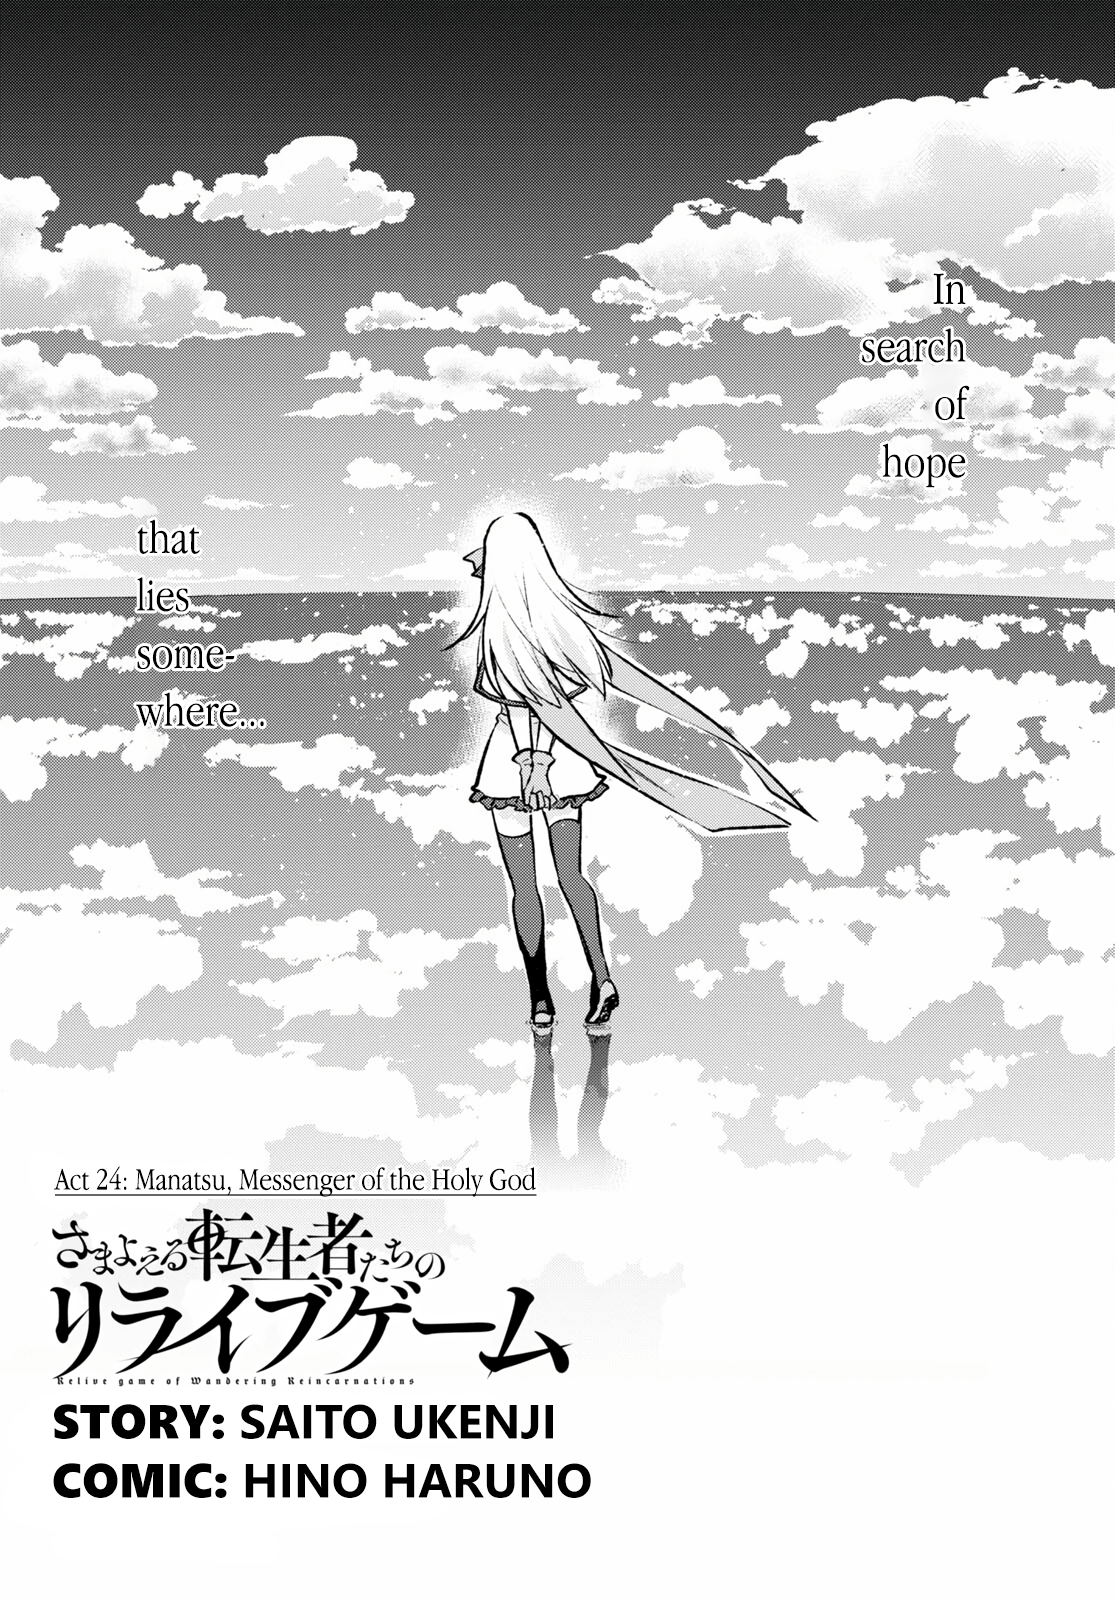 Samayoeru Tensei-Sha-Tachi No Relive Game - Page 1